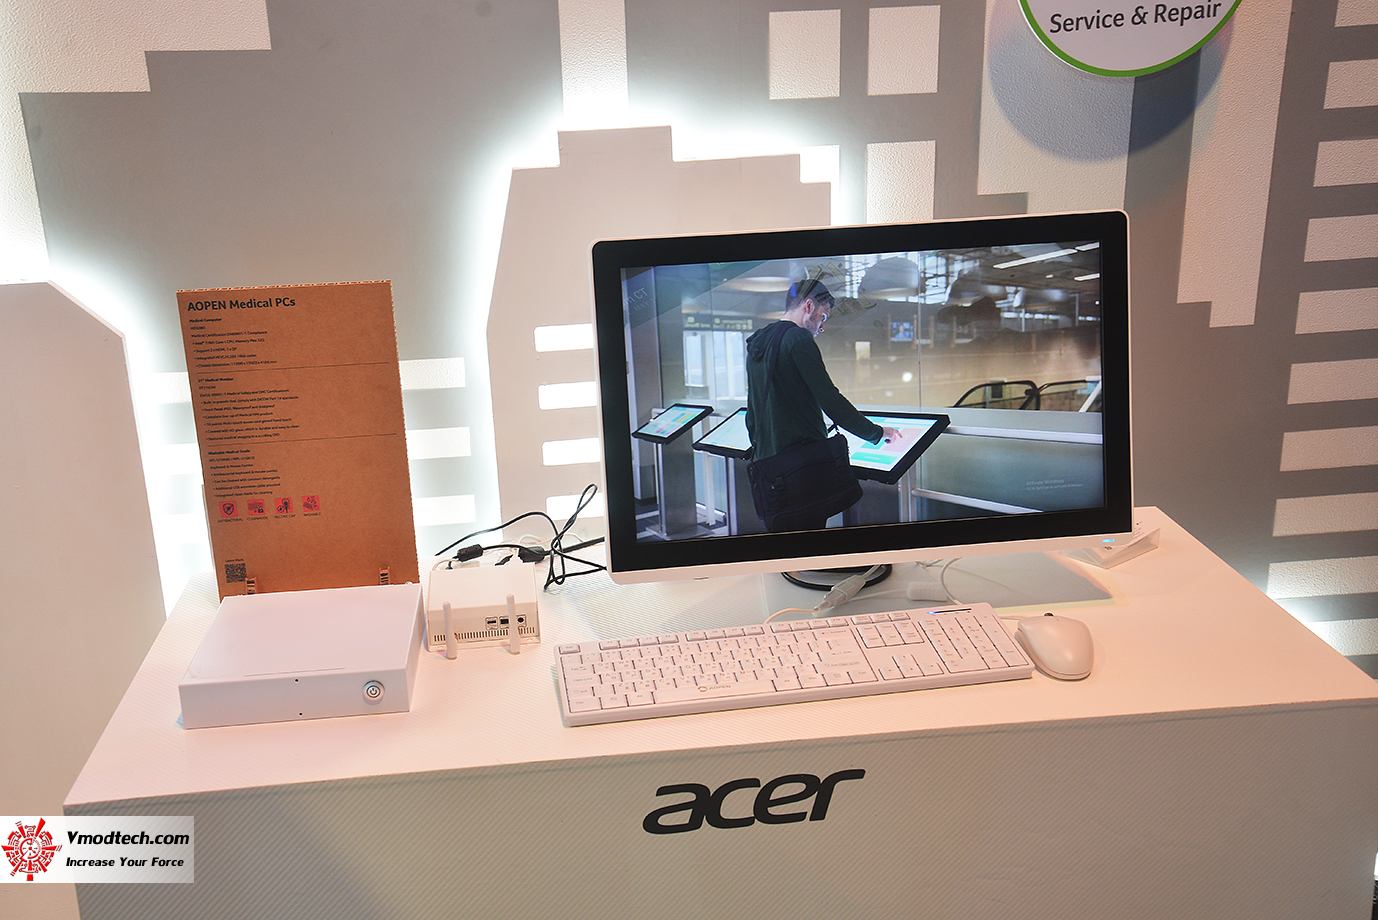 dsc 9542 Acer@Computex2023 เยี่ยมชมบูธเอเซอร์กับผลิตภัณฑ์แล็ปท็อป อุปกรณ์พีซีคอมโพเน้นท์มากมายรุ่นใหม่ล่าสุดตอบโจทย์สายเกมมิ่งและรักษ์โลก